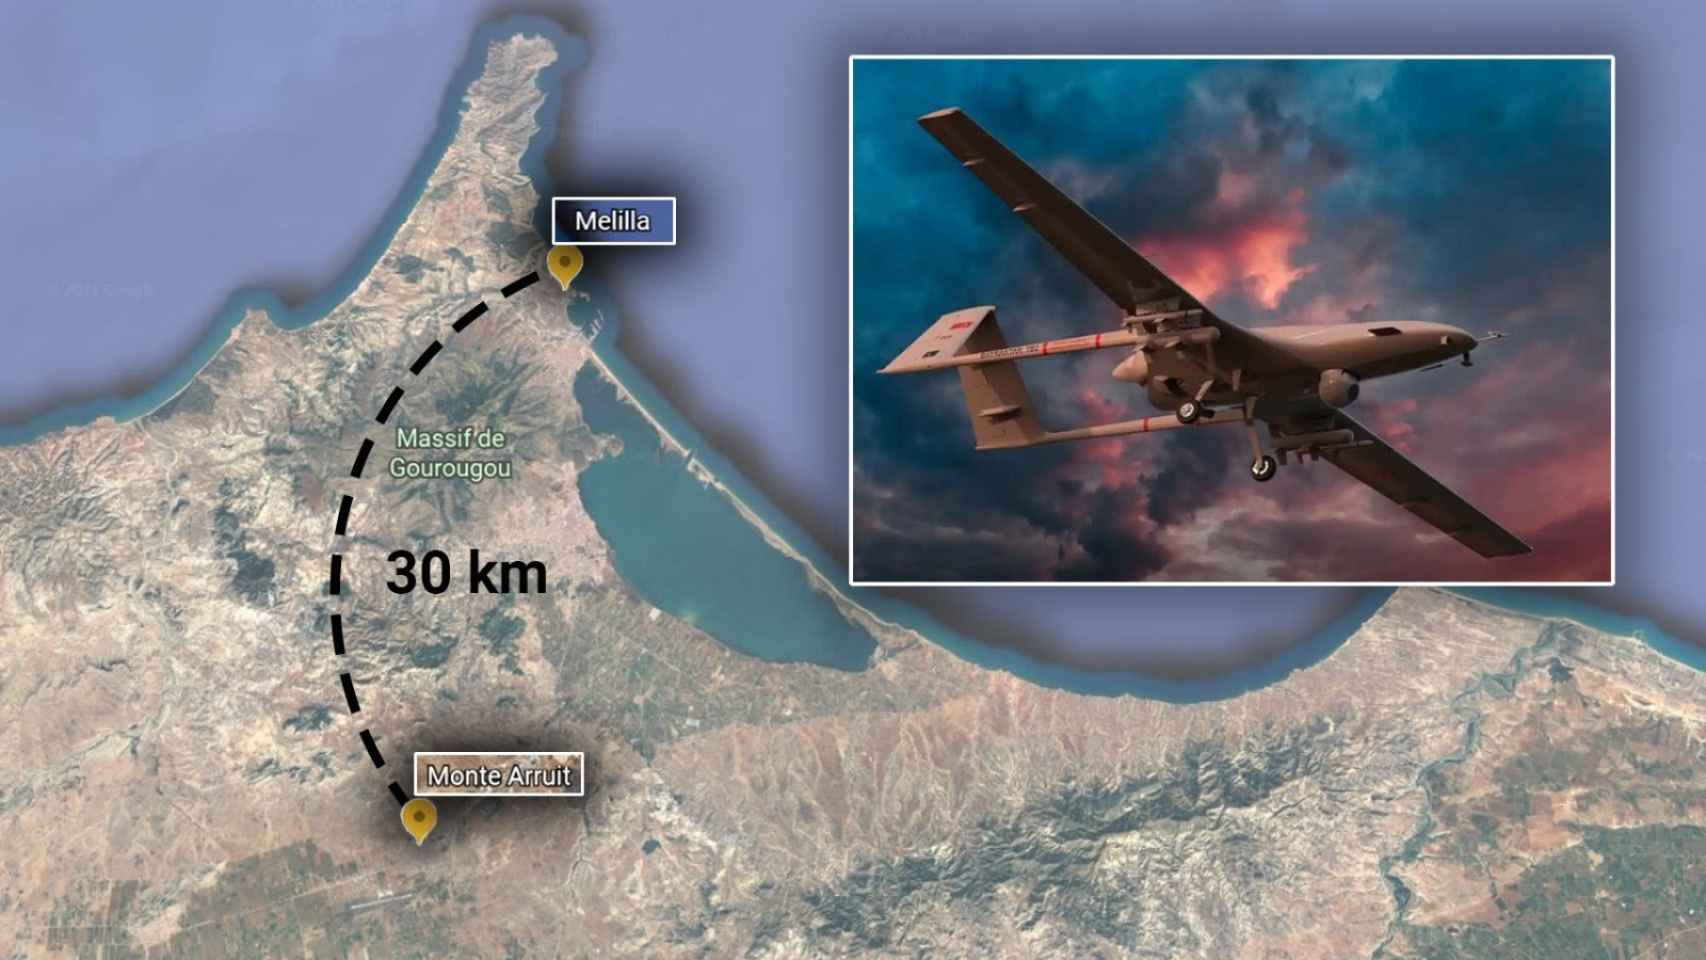 Distancia de dónde están los drones a Melilla.